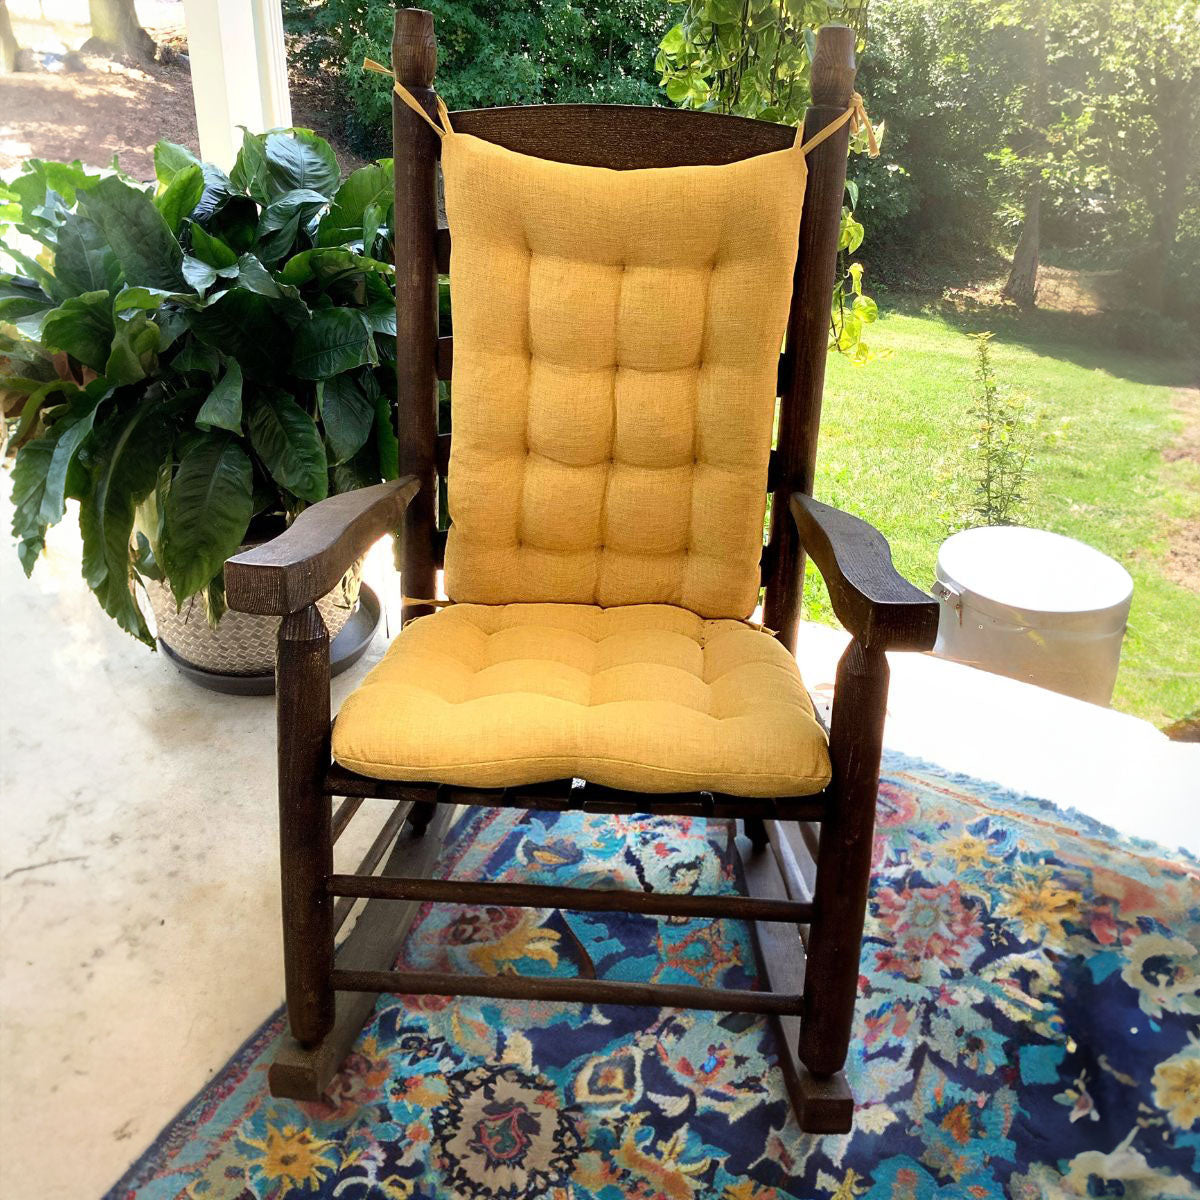 Rocking Chair Cushions, Barnett Home Decor